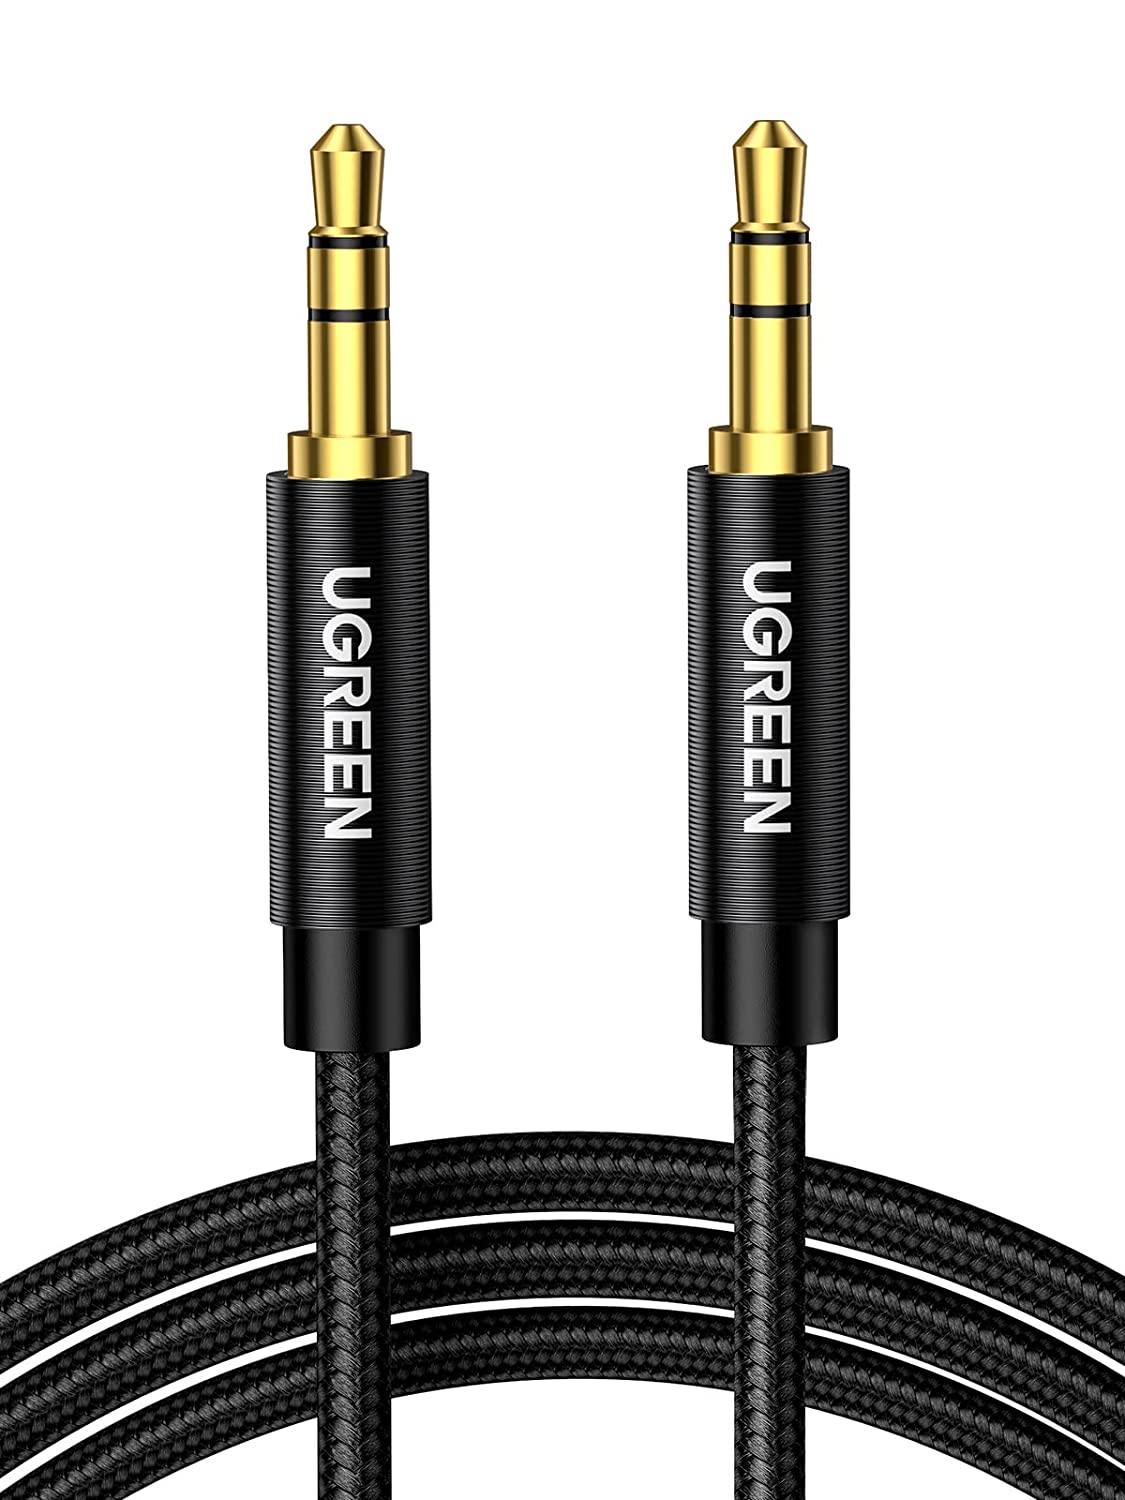 50361 Аудио кабель 3,5мм - 3,5мм UGREEN AV112, цвет: черный, длина: 1m от prem.by 